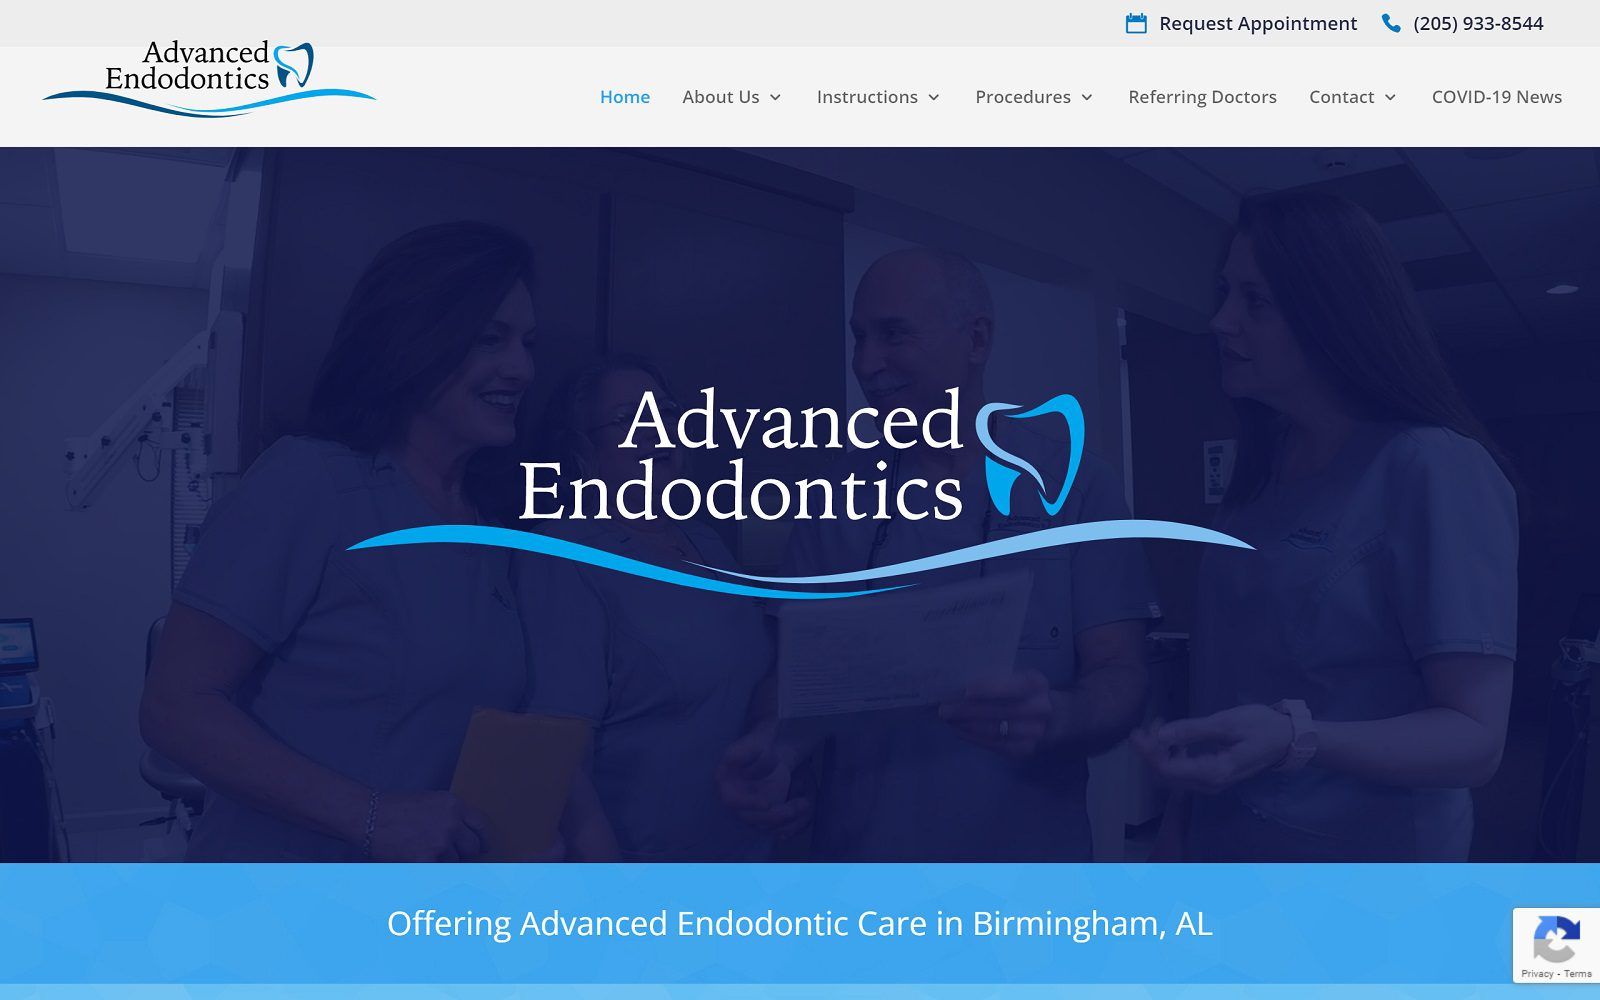 The screenshot of advanced endodontics smithrootcanal. Com website